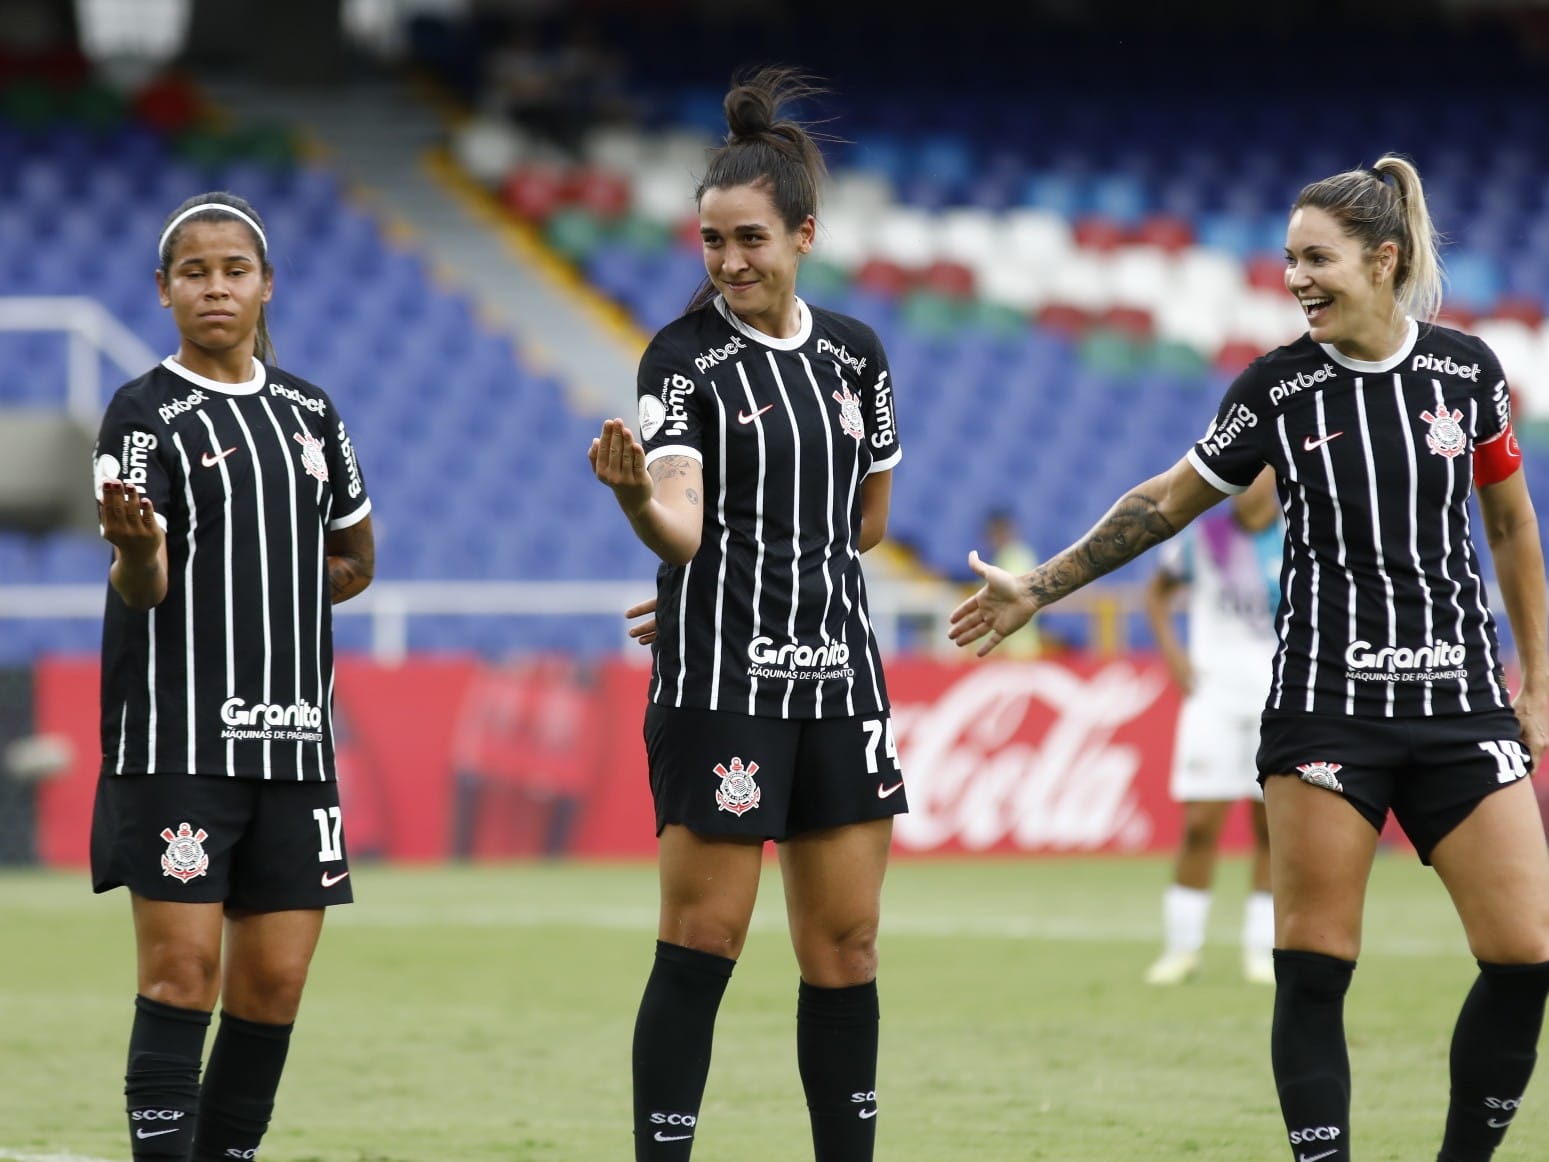 Definição das quartas-de-finais da Libertadores Feminina tem